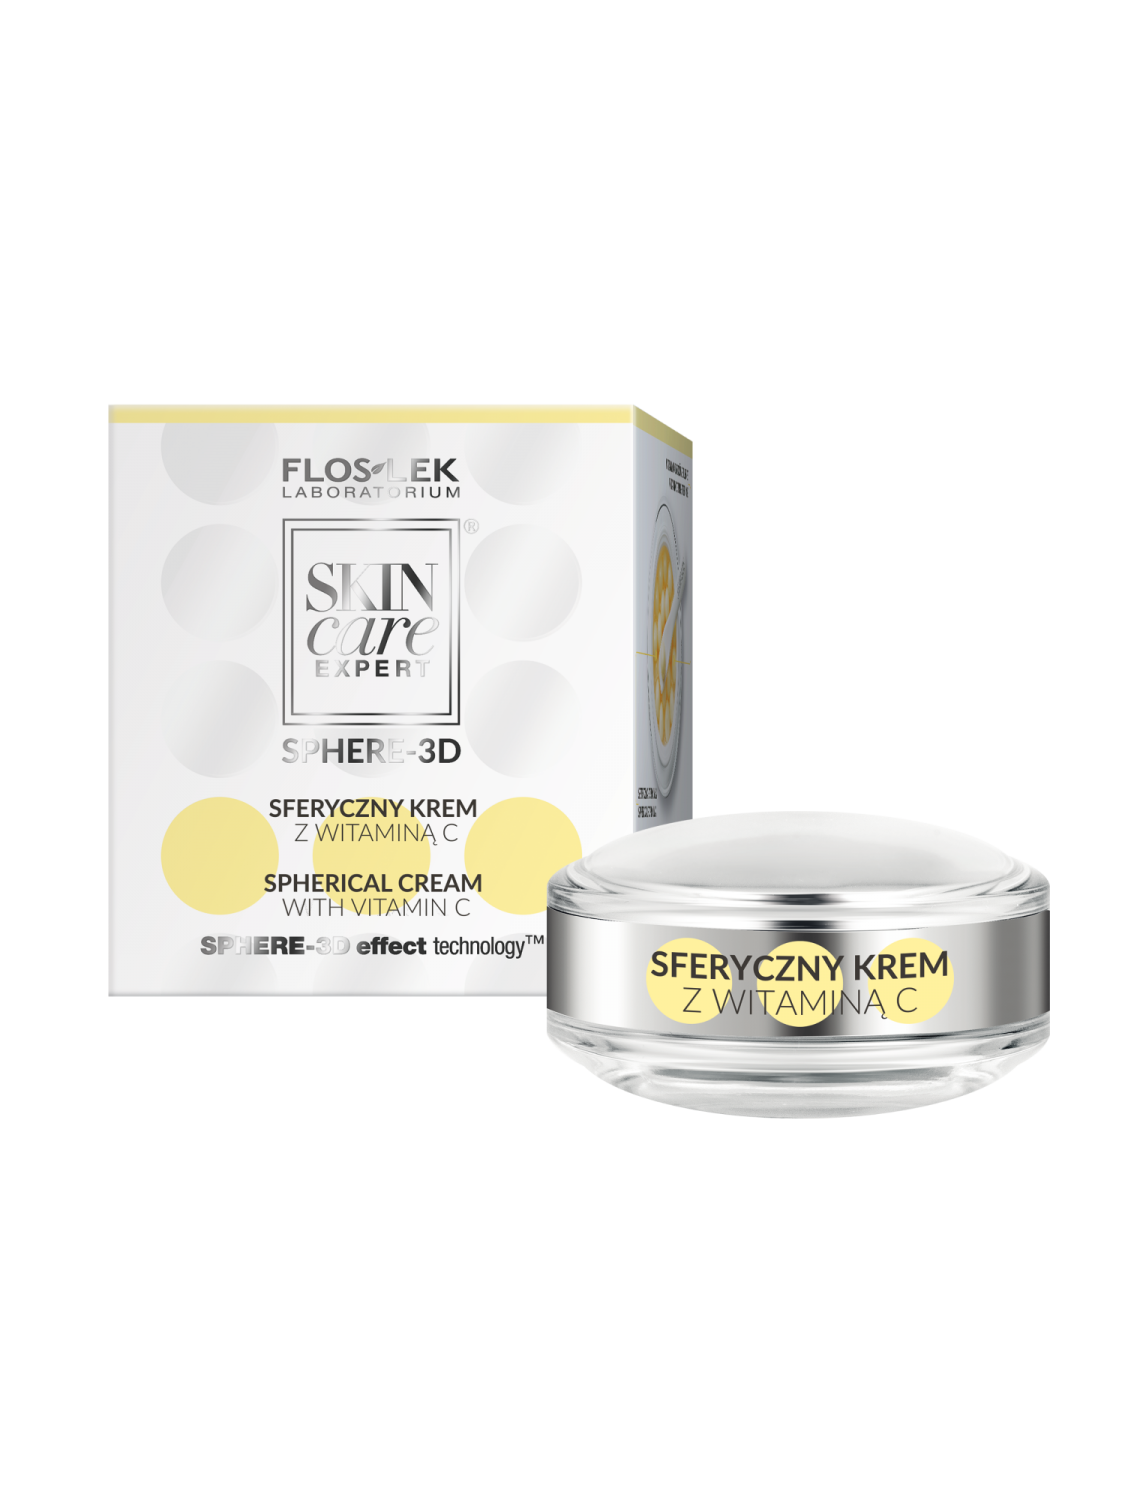 SKIN CARE EXPERT® SPHERE-3D Sphärische Creme mit Vitamin C 11,5 g - Floslek